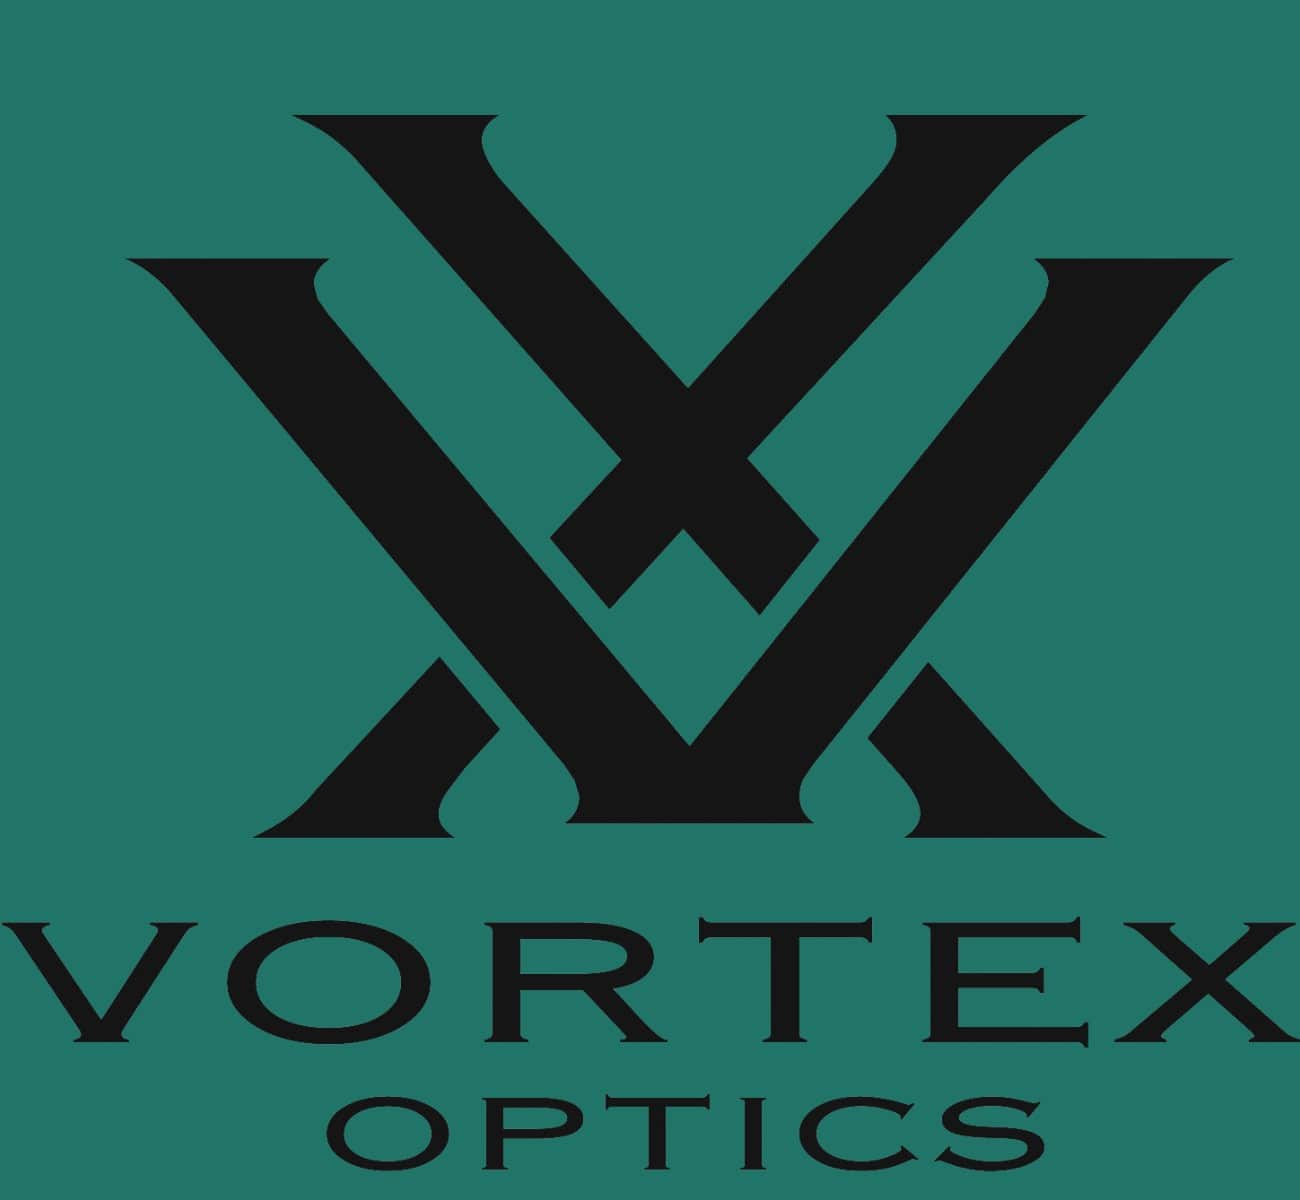 VORTEX OPTICS